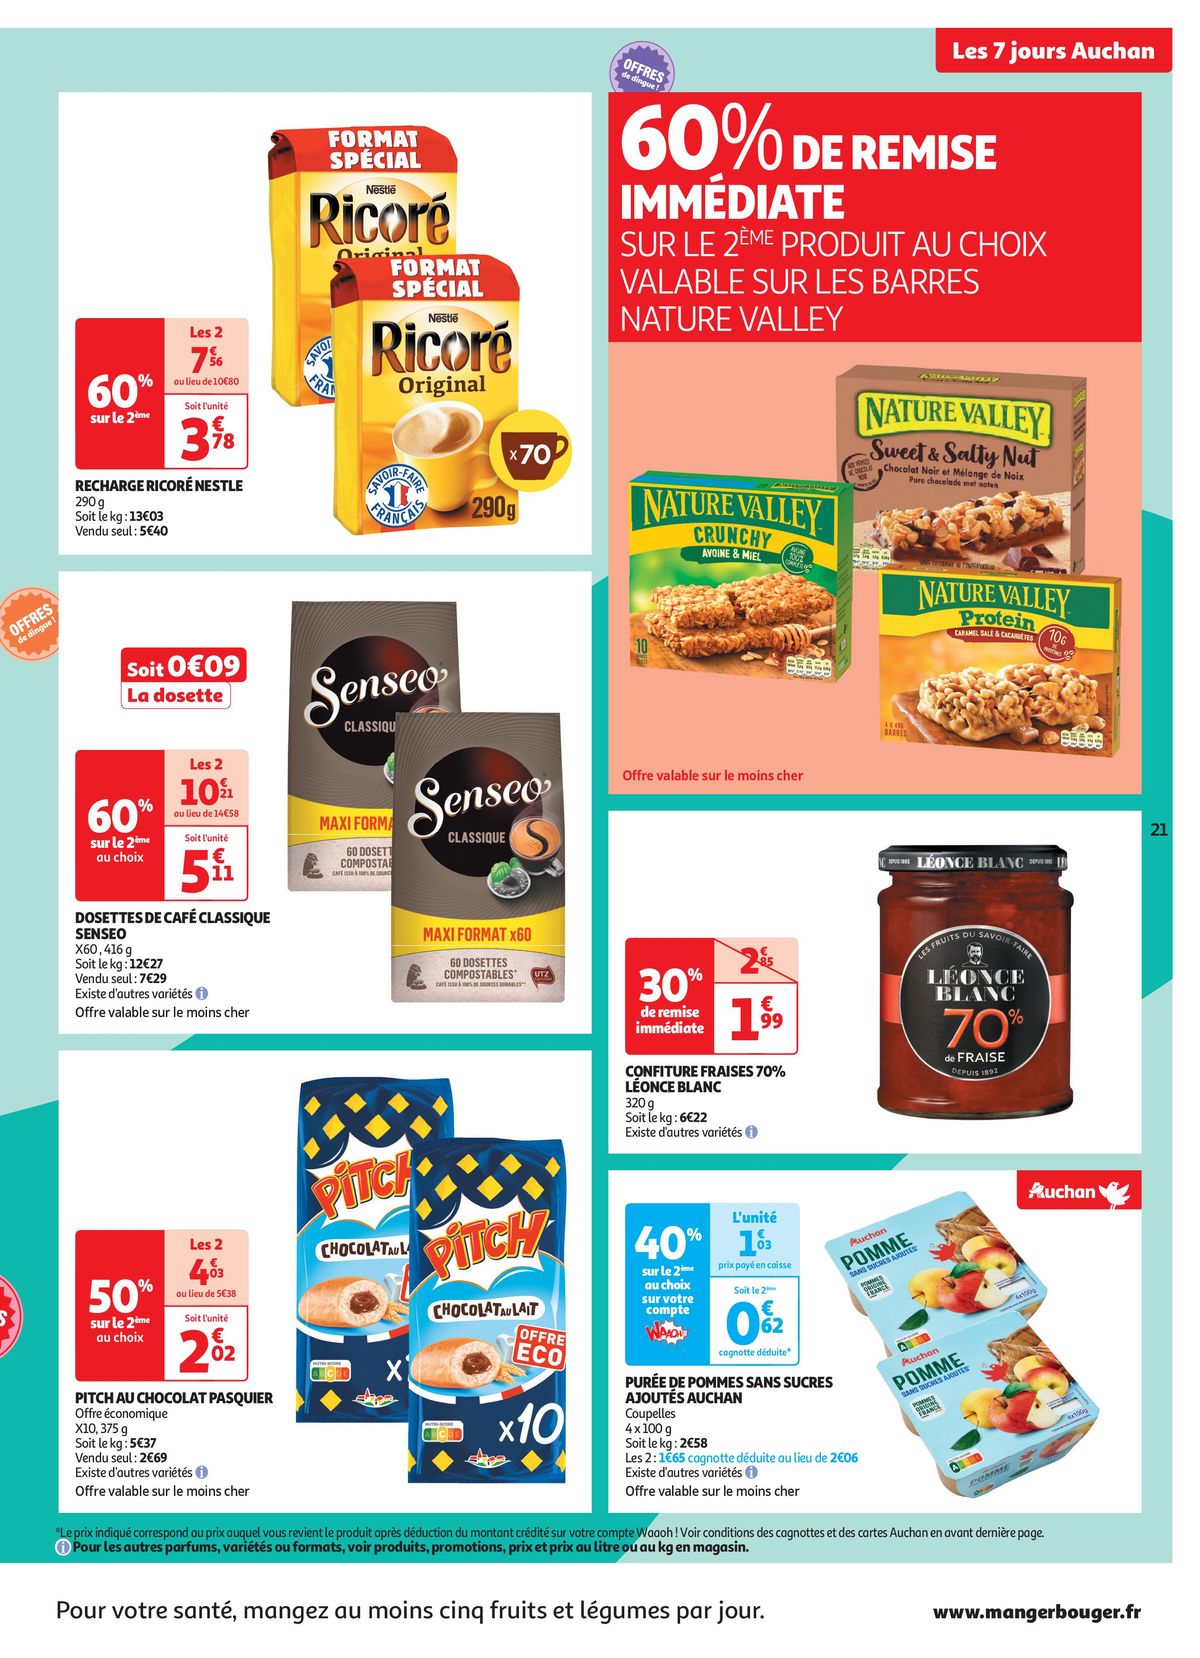 Catalogue C'est les 7 jours Auchan dans votre super !, page 00021